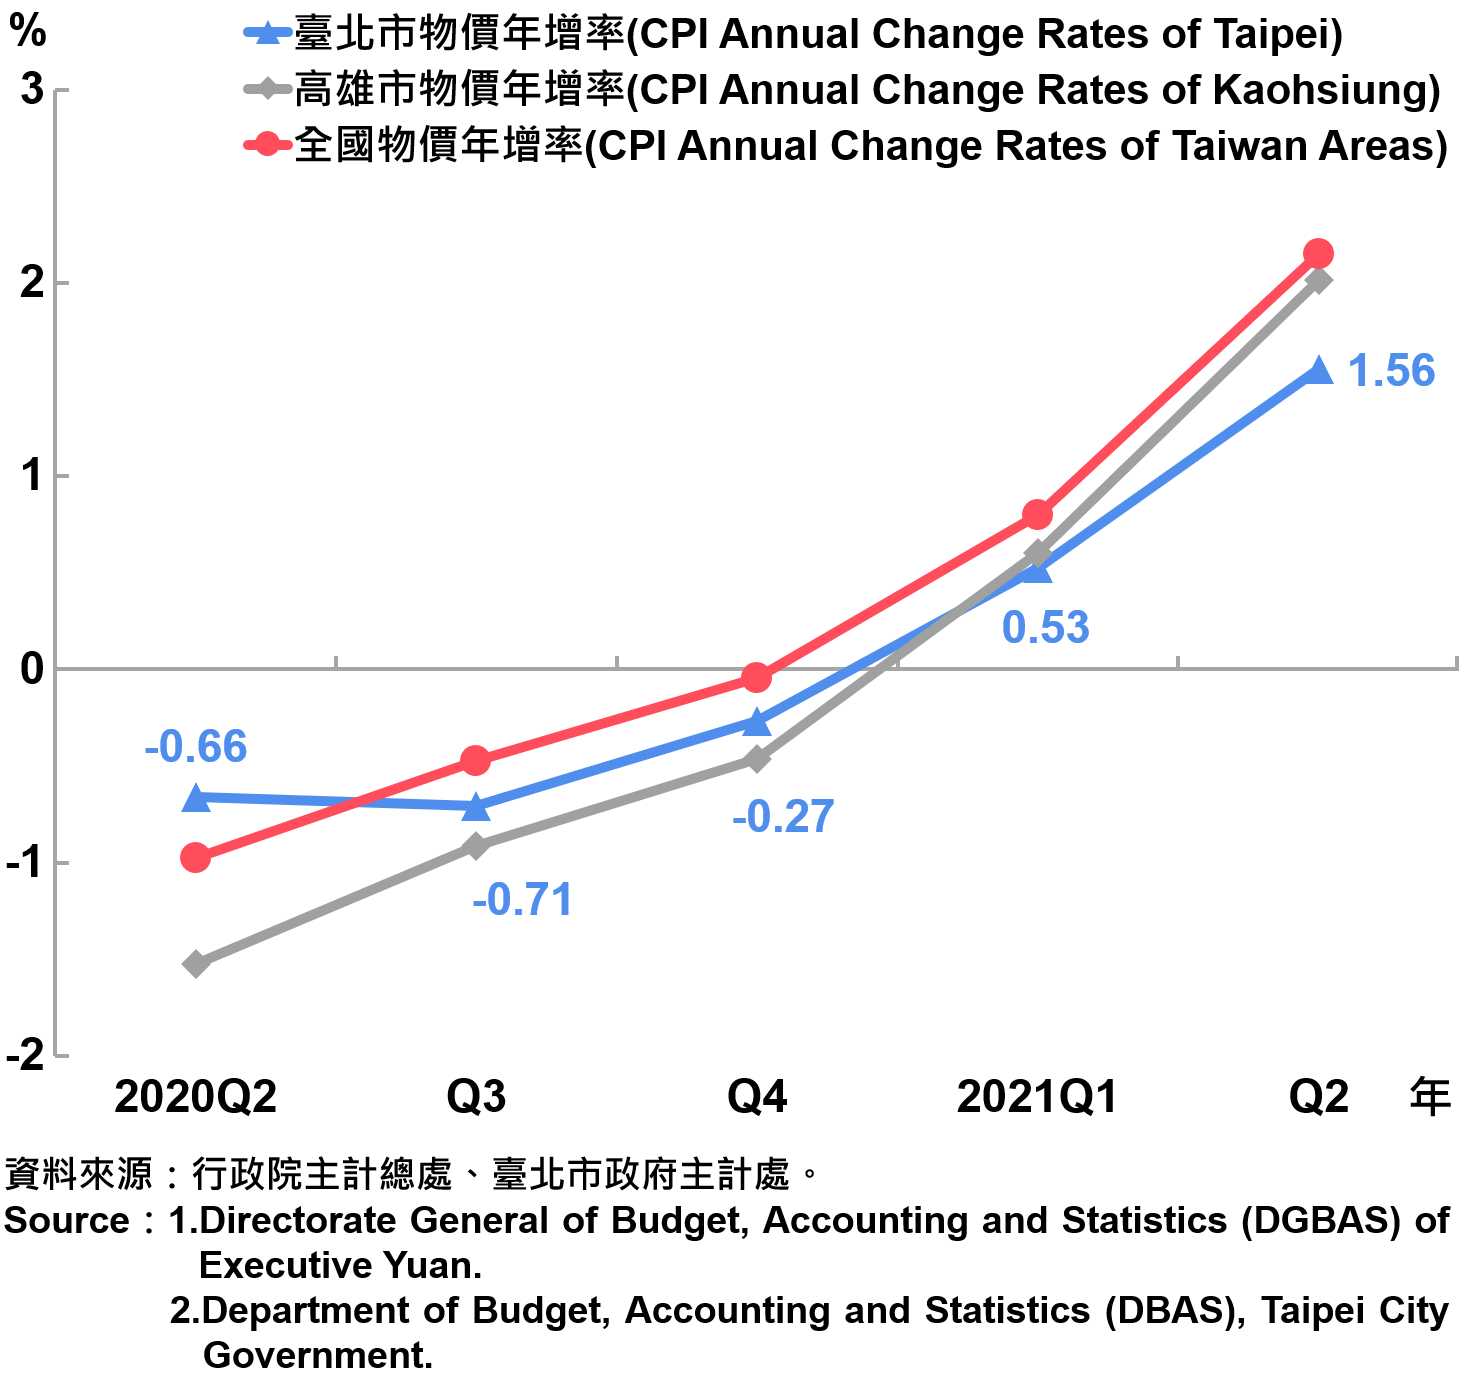 臺北市消費者物價指數（CPI）年增率—20210Q2 The Changes of CPI in Taipei City—2021Q2